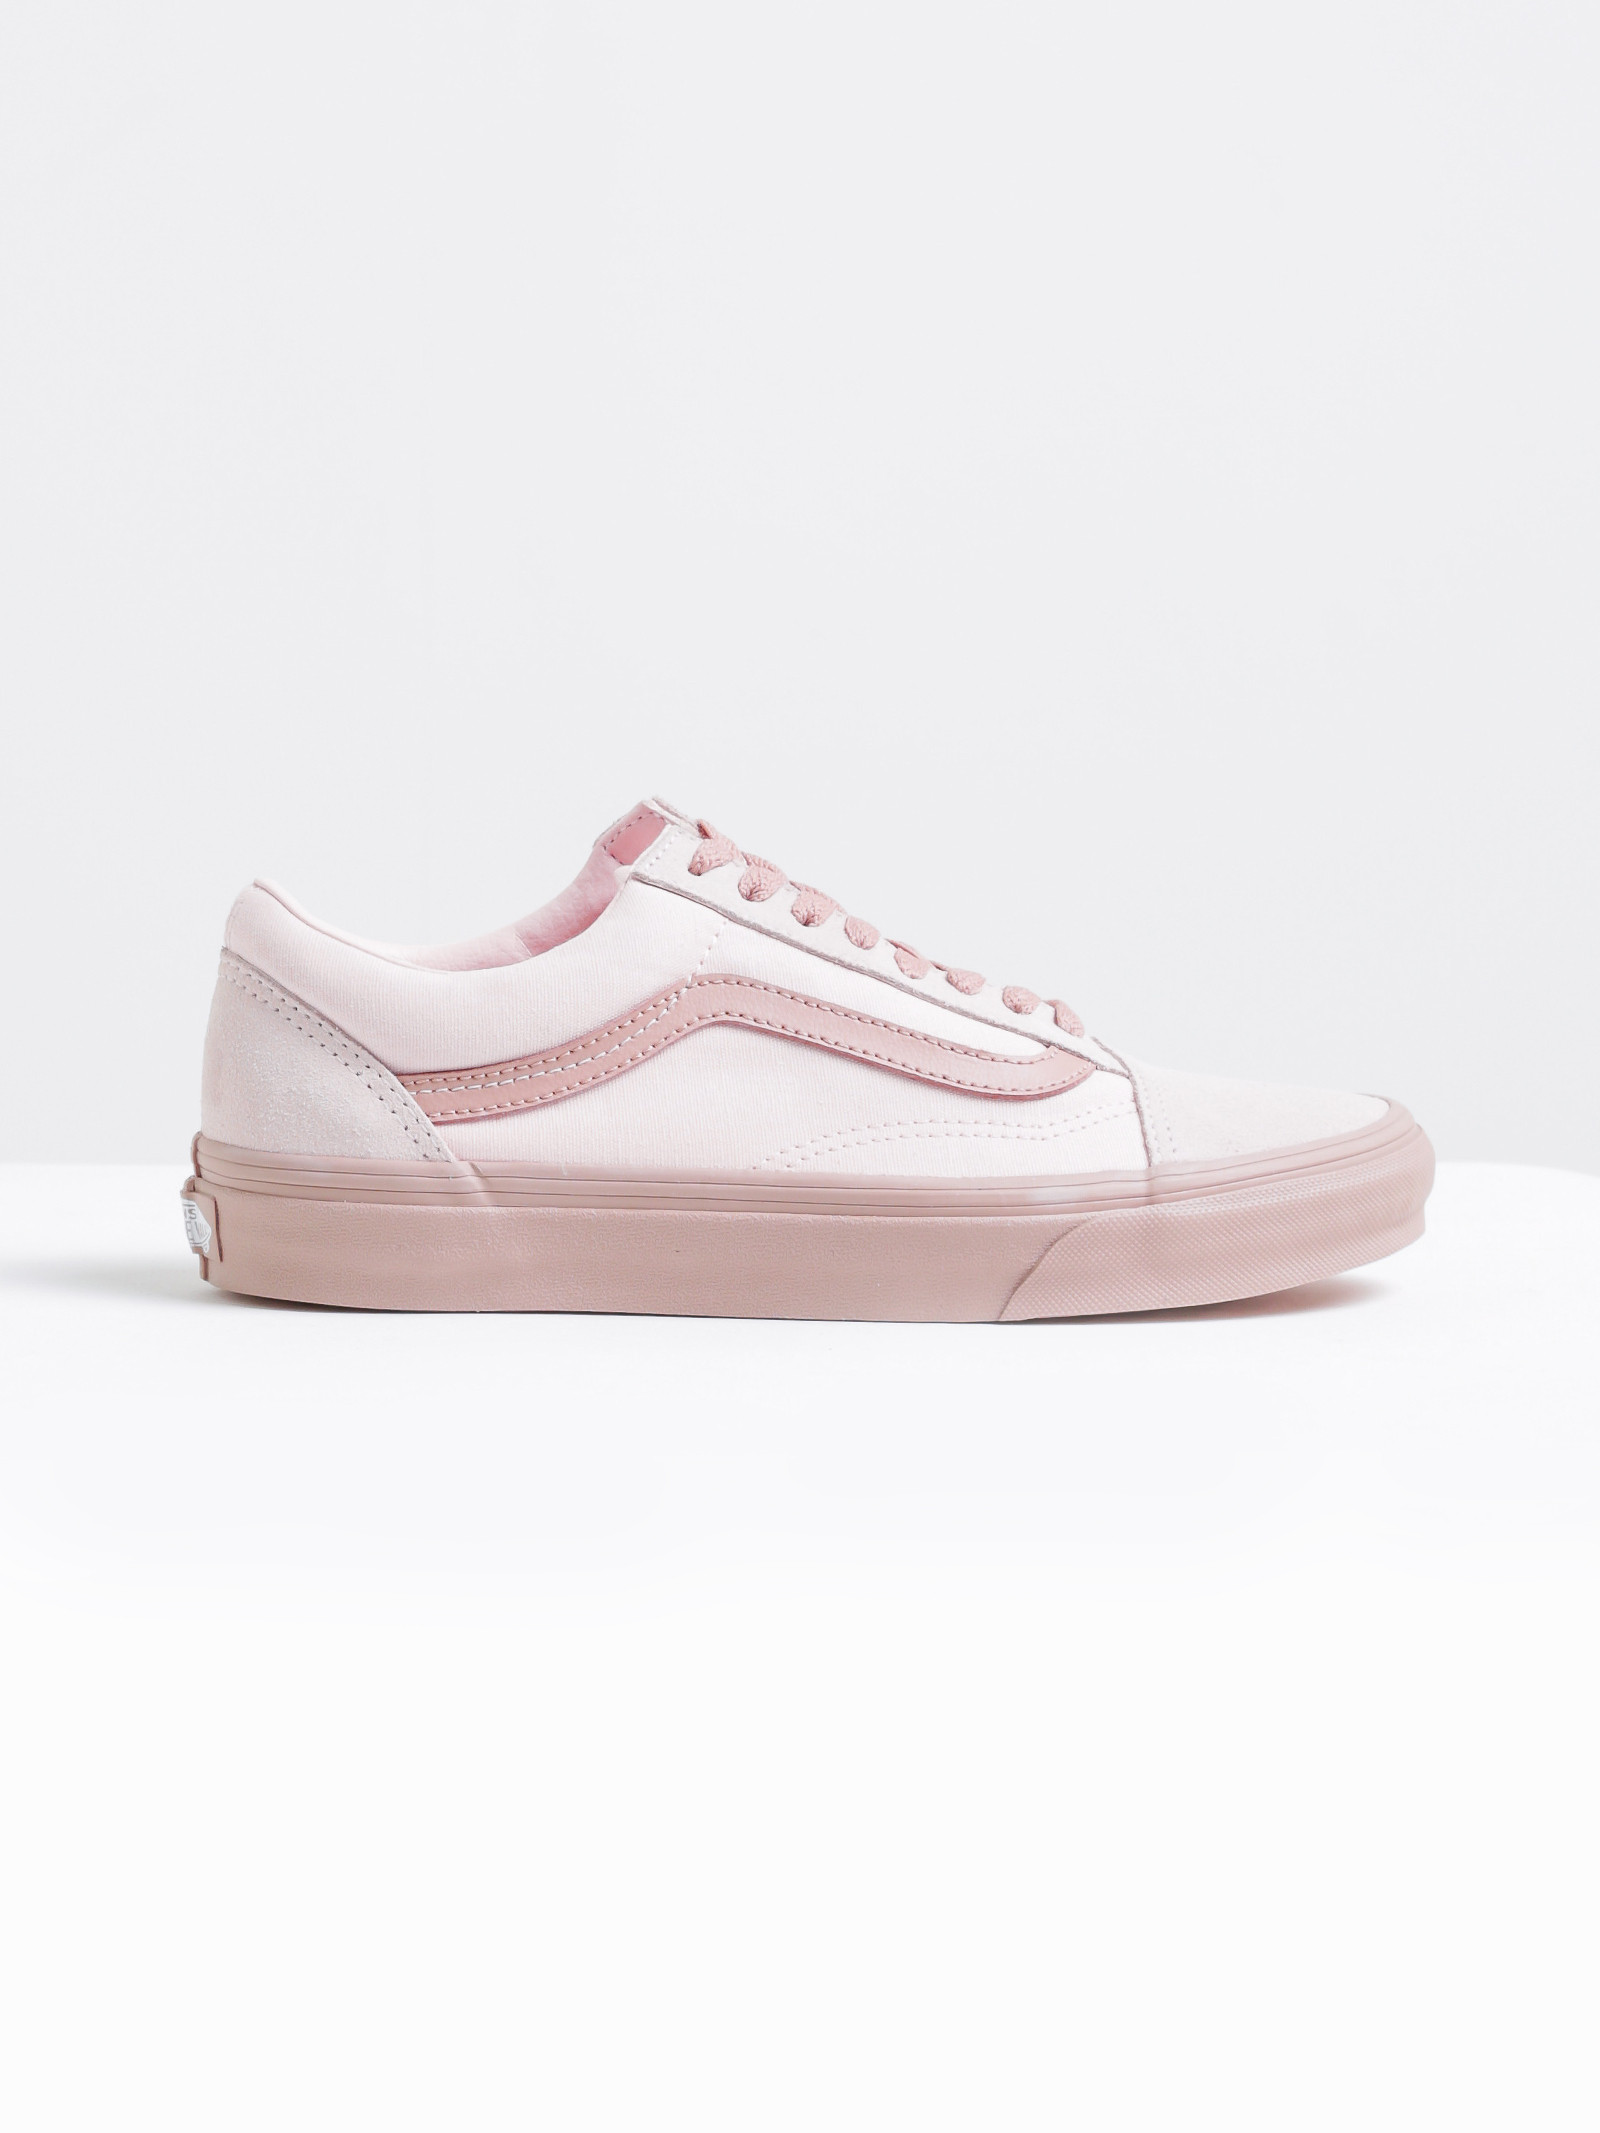 Vans Womens Old Skool 2-Tone Sneakers in Pale Pink